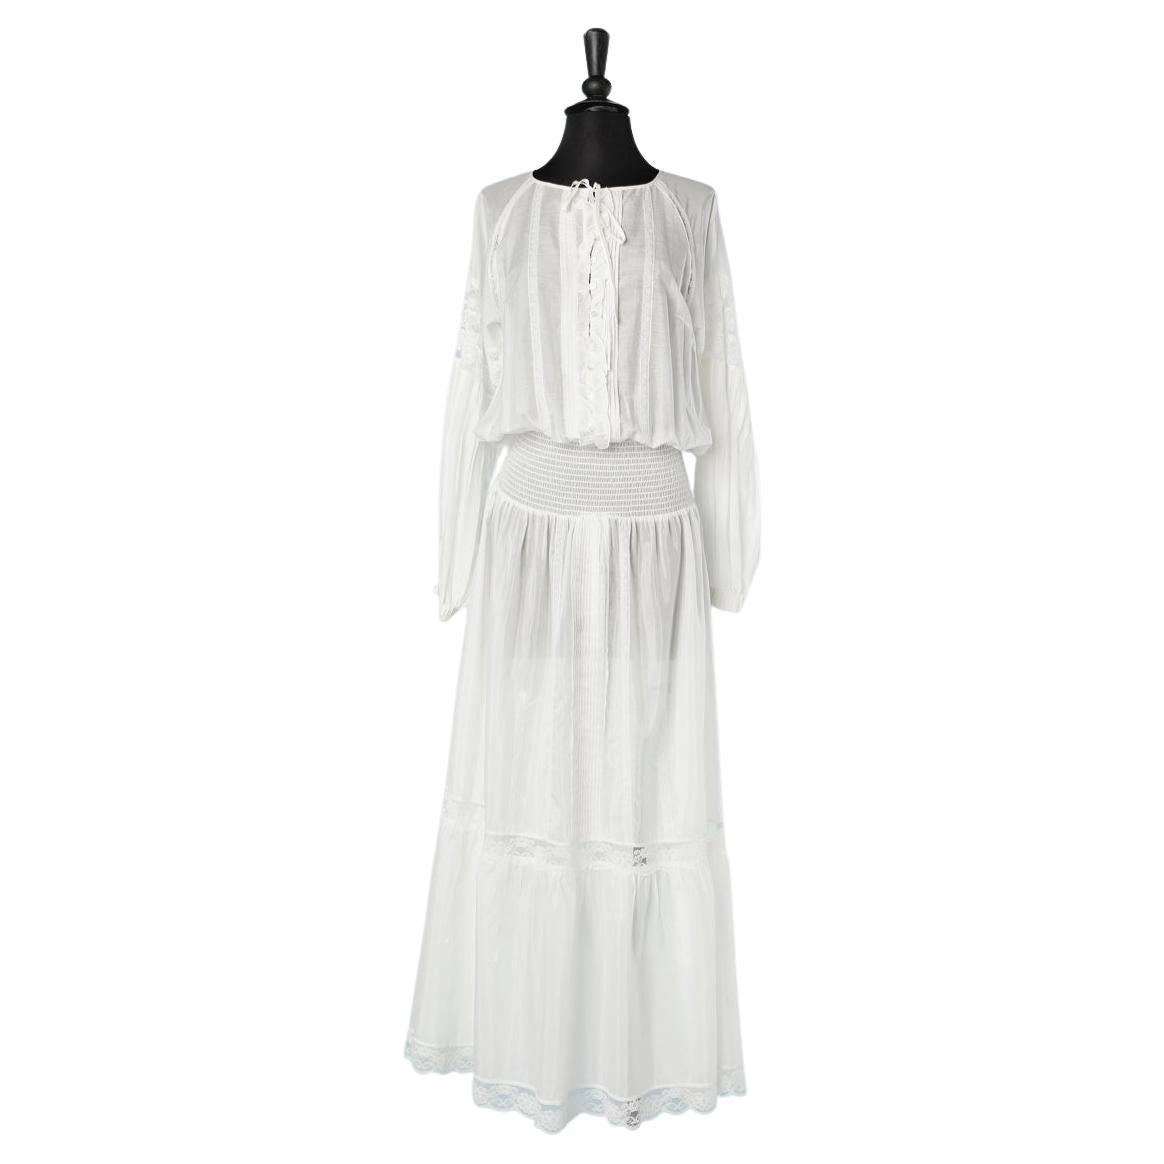 Langes romantisches Kleid aus weißer Seide und Baumwolle mit Spitzenintarsien Roberto Cavalli Klasse